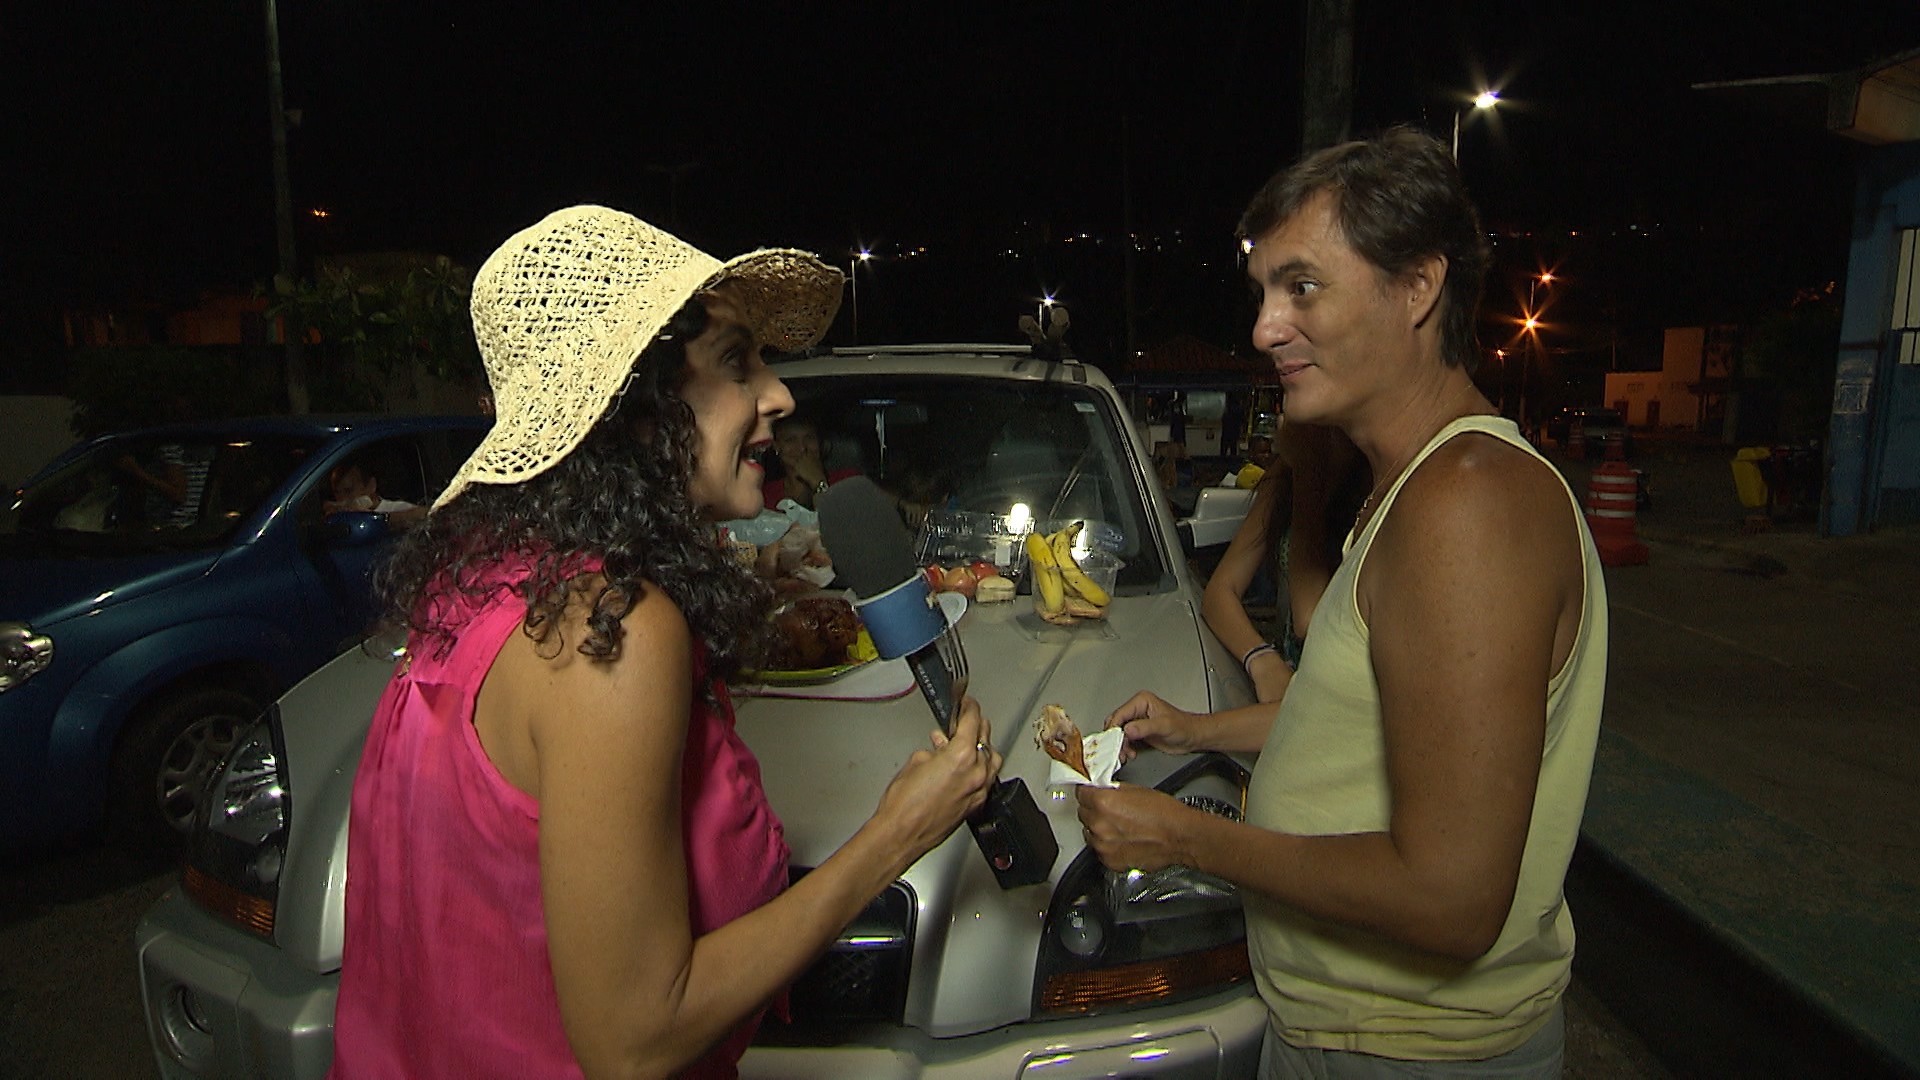 Maria anima a fila do ferry boat com uma farofada no capô (Foto: Divulgação)